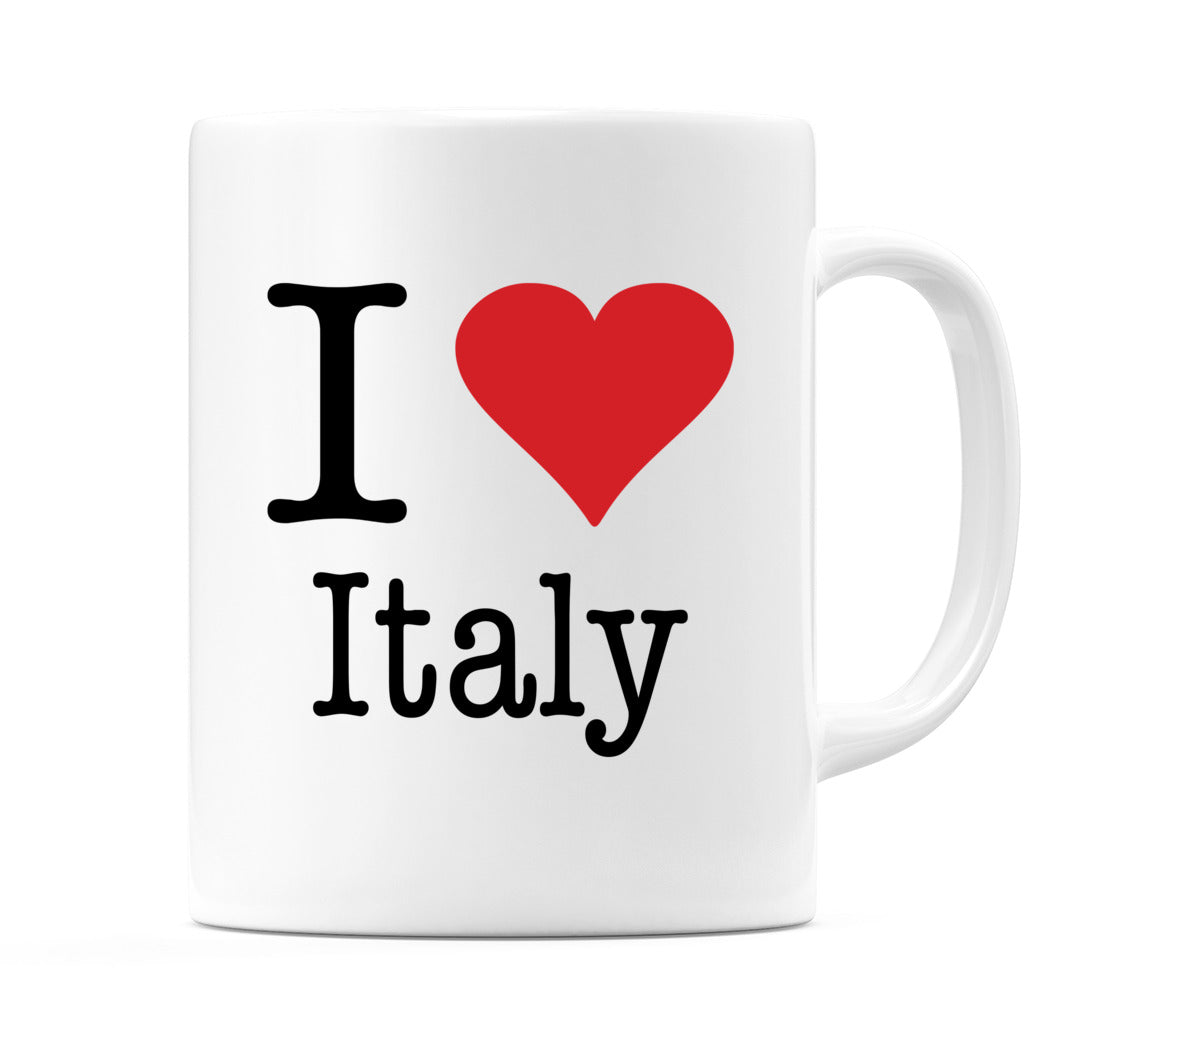 I Love Italy Mug